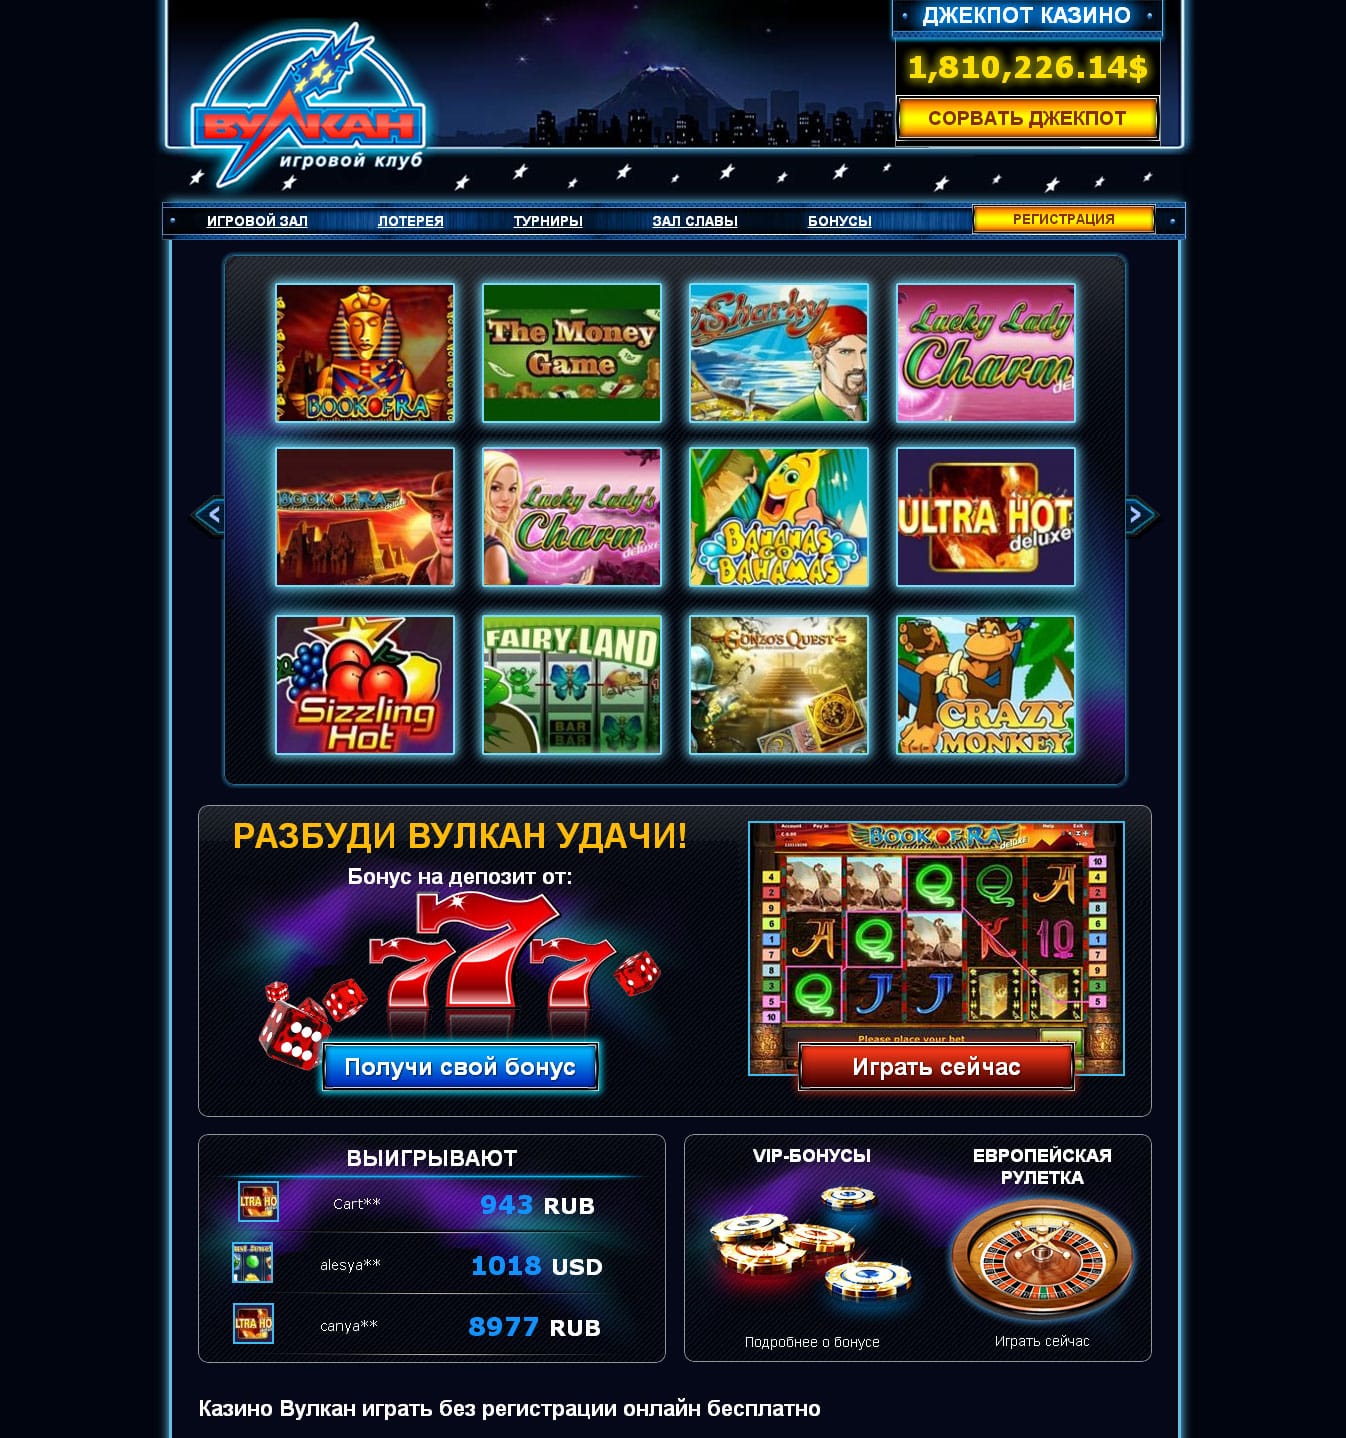 Вулкан игровые автоматы онлайн на деньги играть клуб игровые автоматы играть бесплатно без регистрации онлайн 777 вулкан